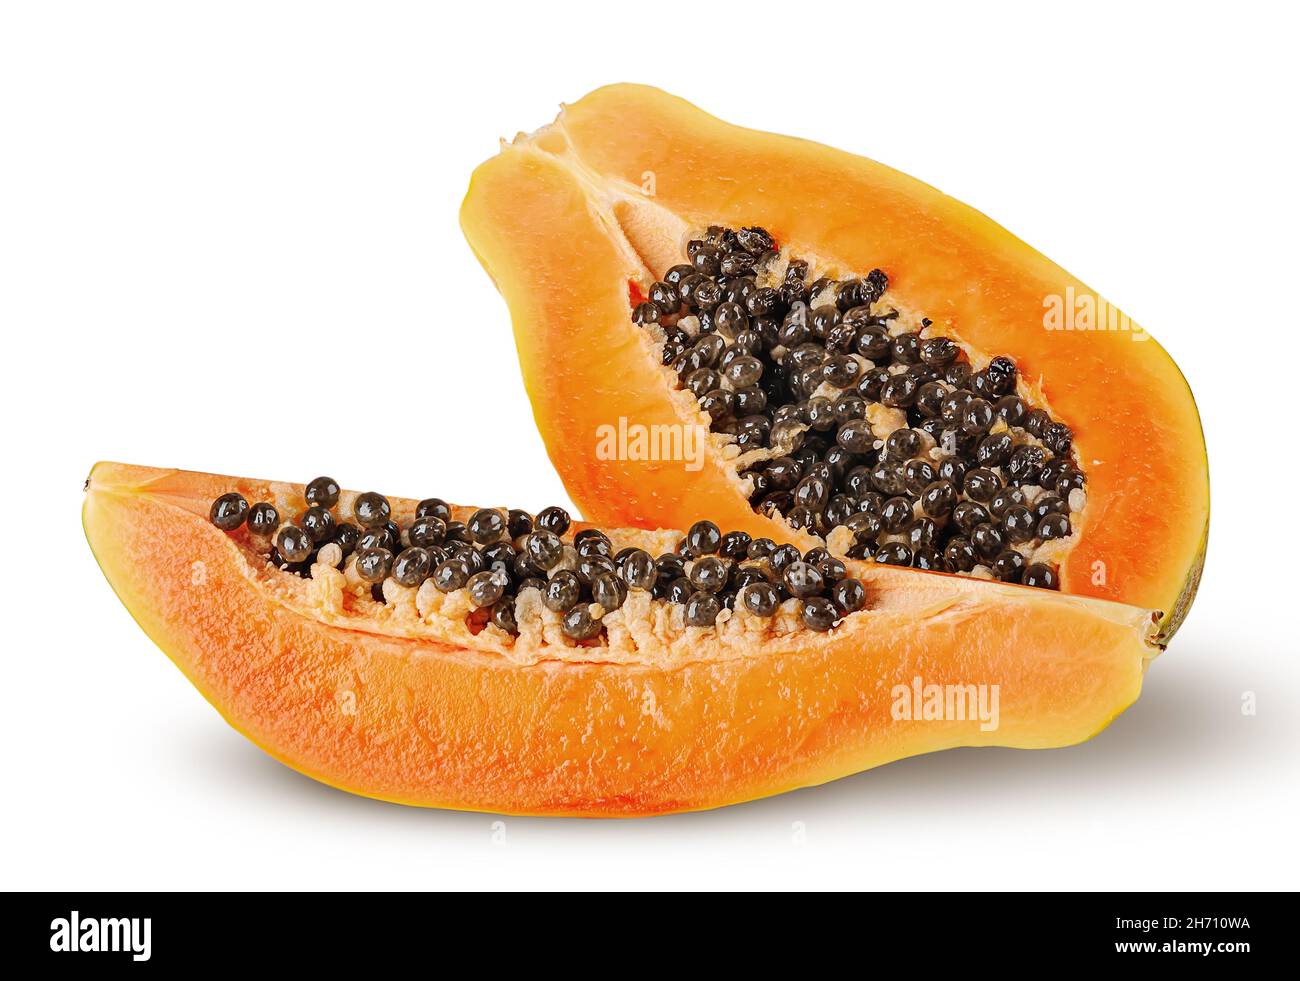 Half and quarter ripe papaya isolated on white background Stock Photo